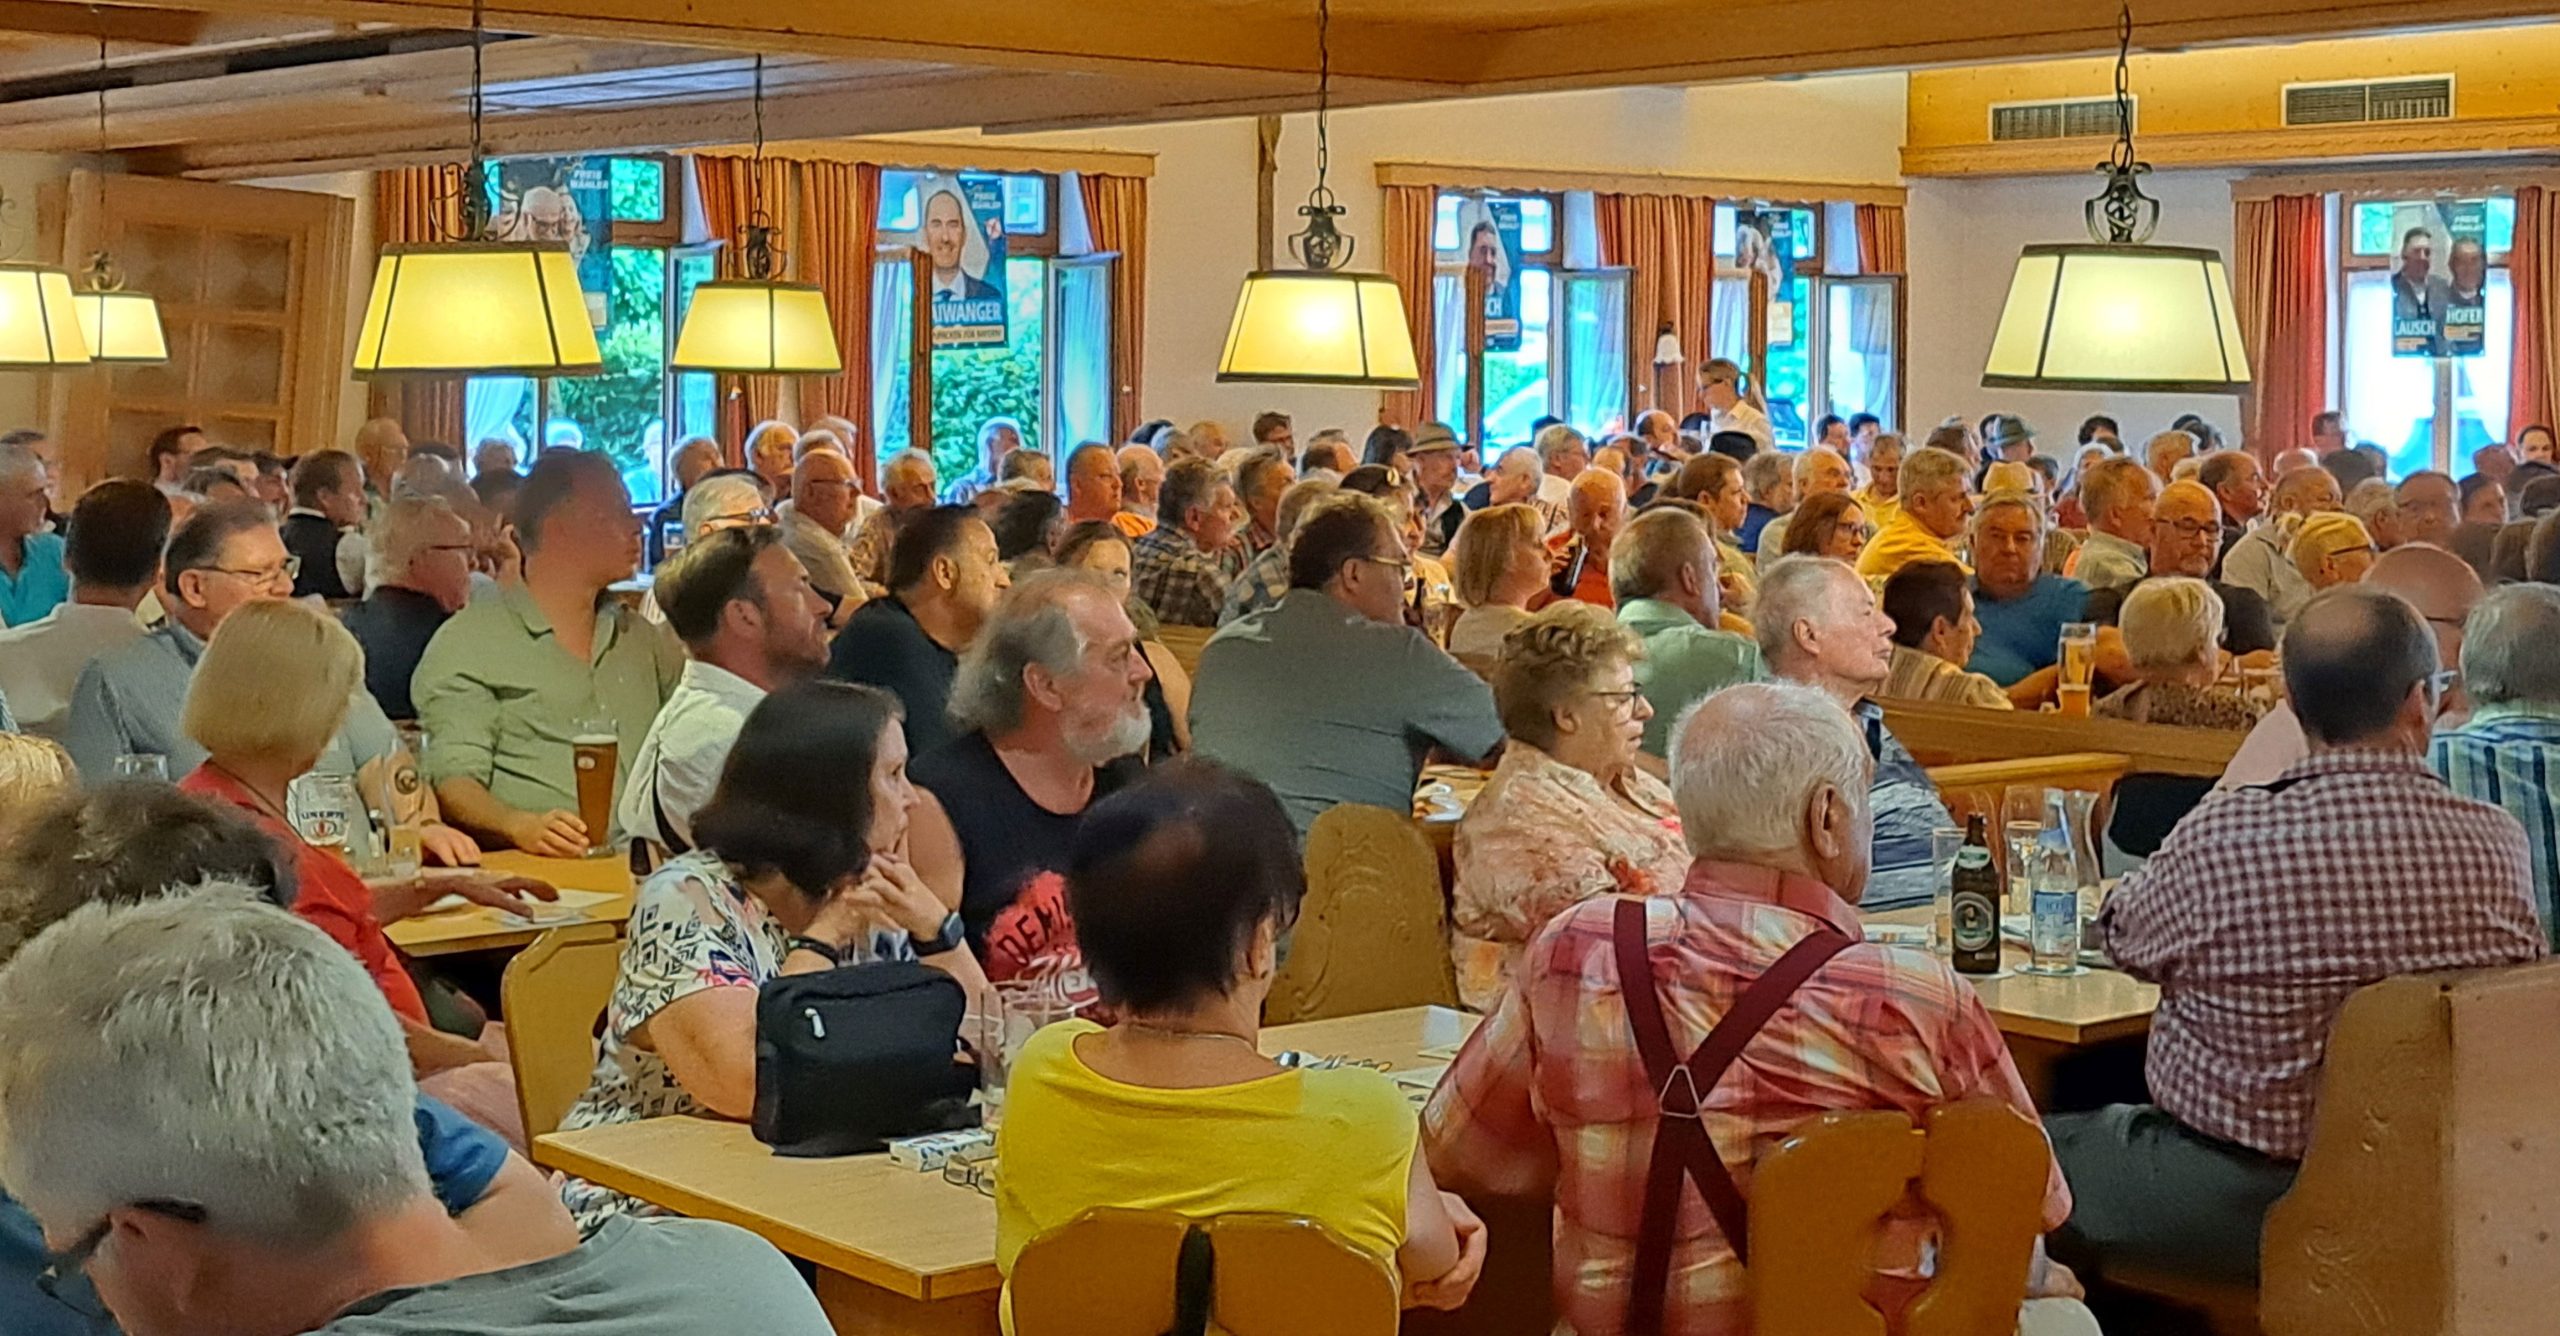 Vollbesetzter Saal beim Besuch von Hubert Aiwanger im Gasthof Bichler am Ramerberg. Fotos: Freie Wähler